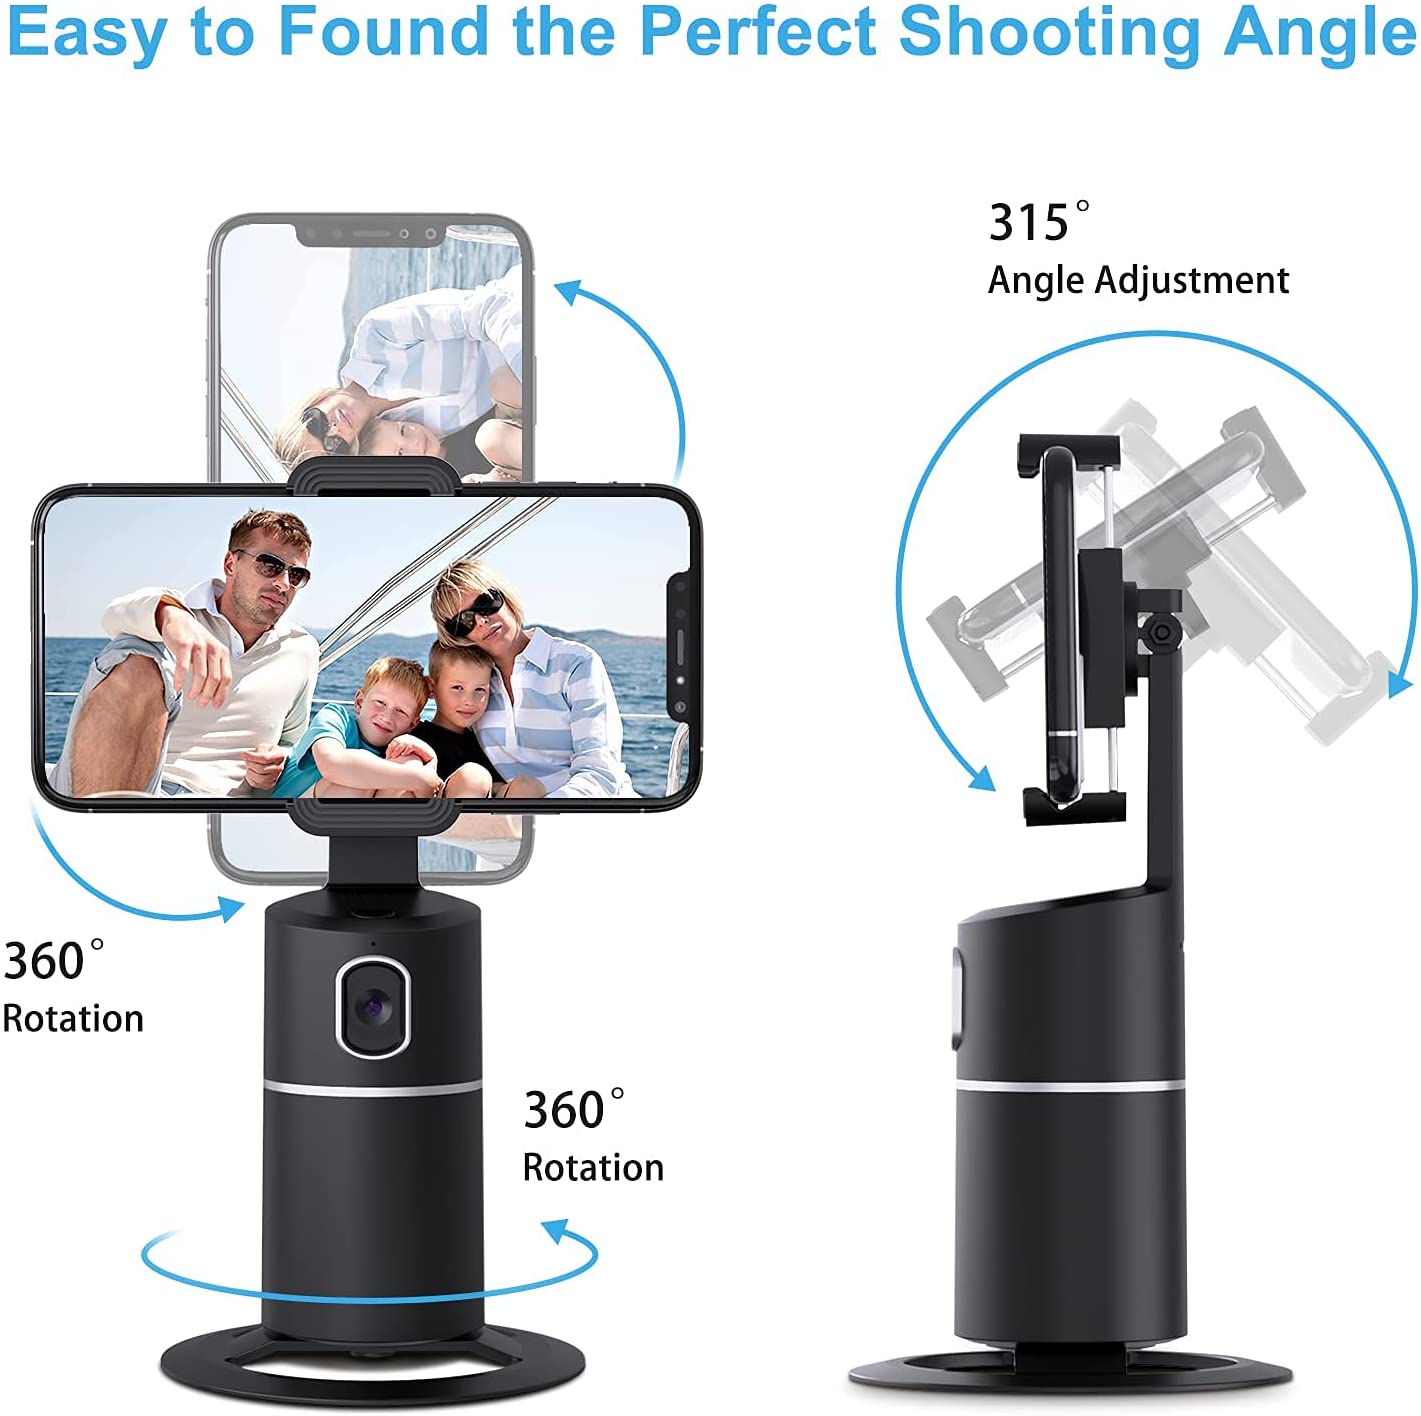 Smart Selfie 360° Tracker